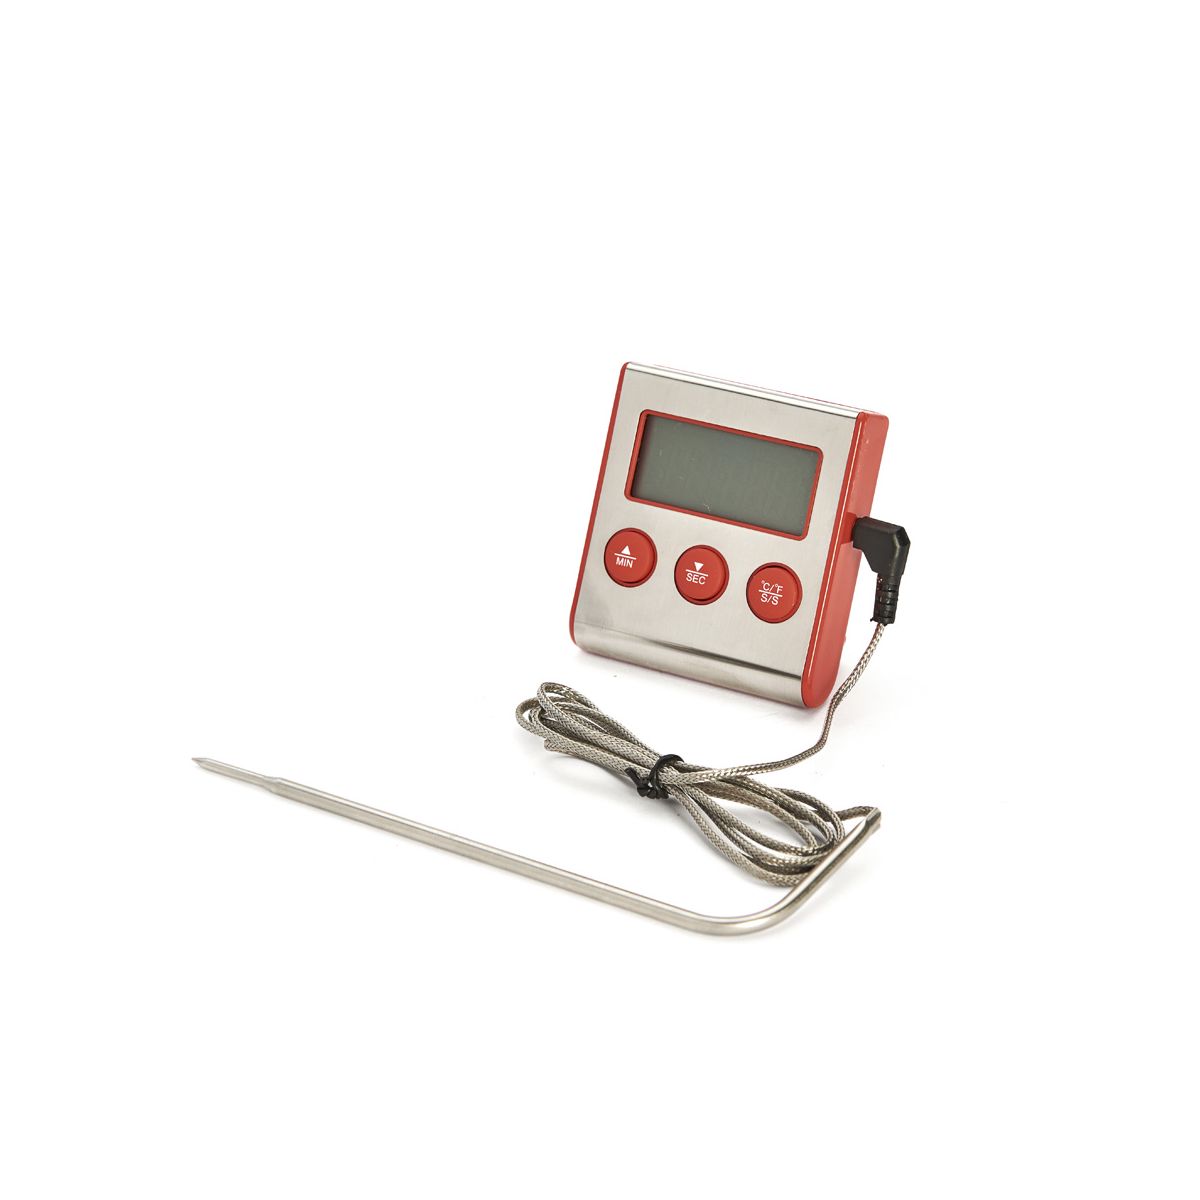 Thermomètre de cuisine digital avec sonde à usage professionnel